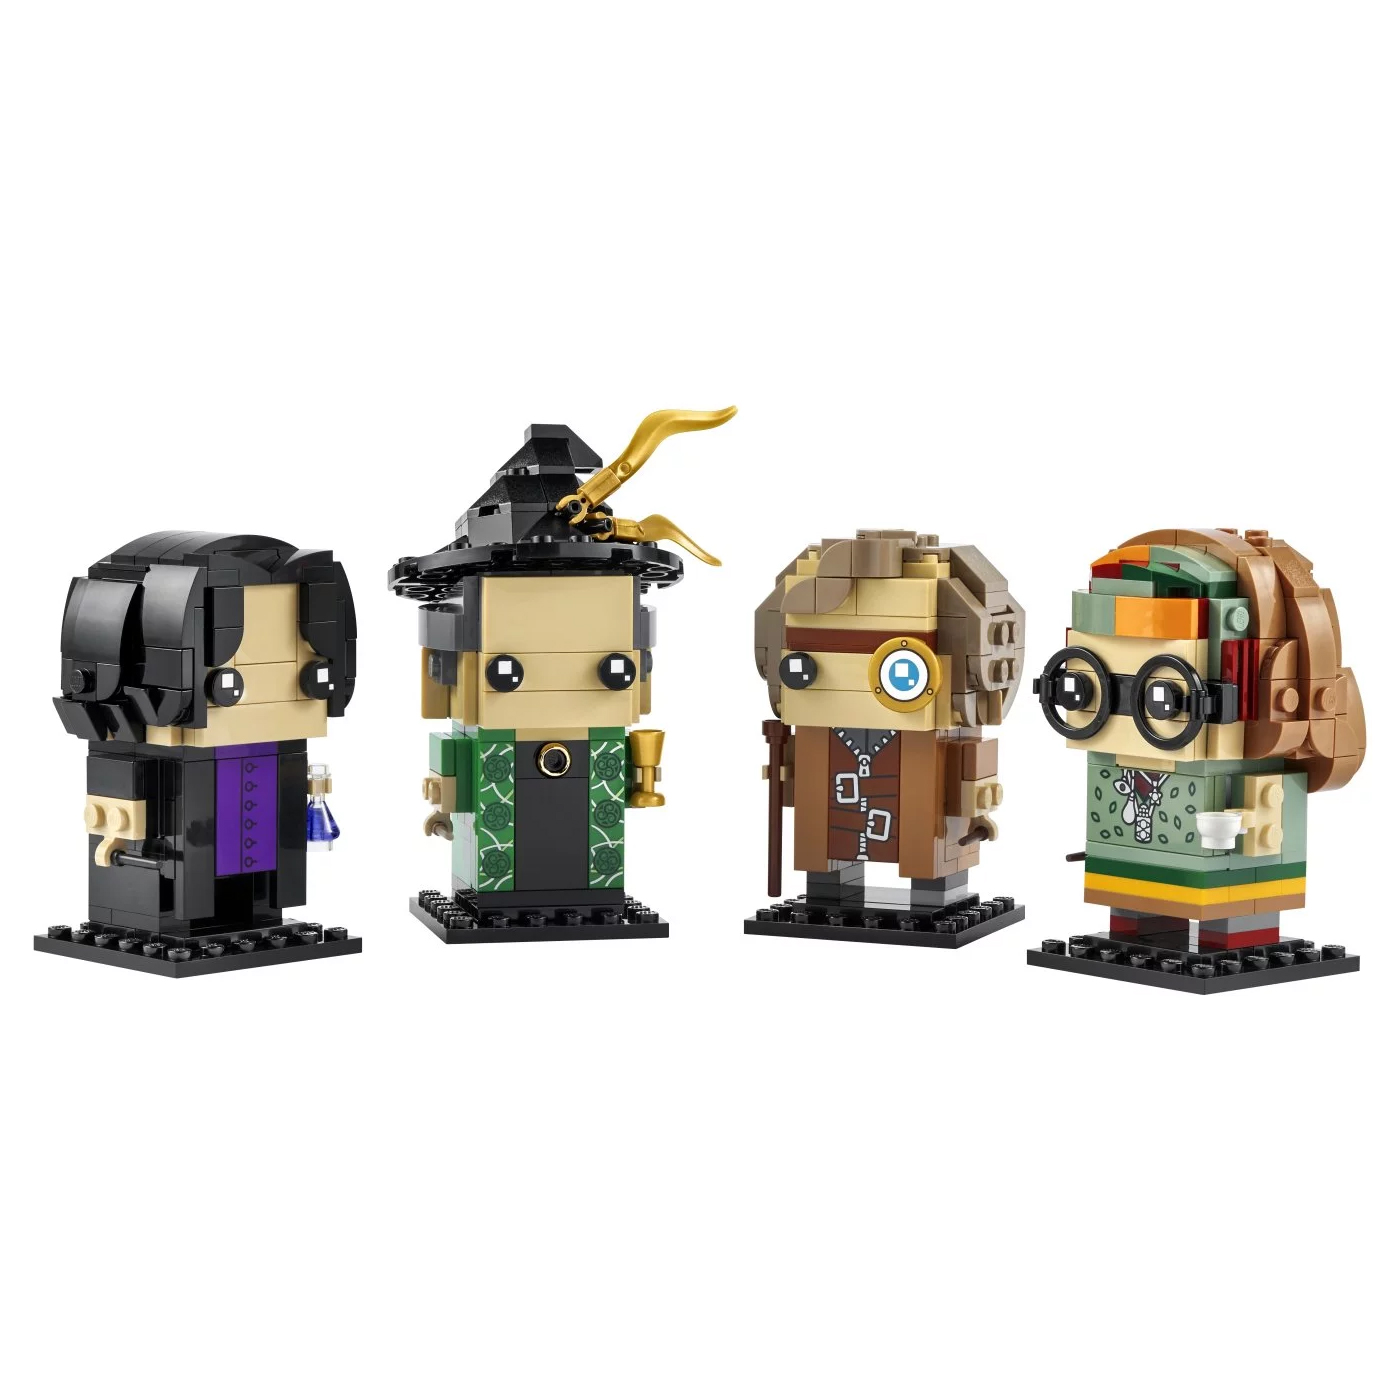 Конструктор Lego BrickHeadz Harry Potter Professors of Hogwarts 40560, 601 деталь конструктор lego brickheadz 40421кевин и боб